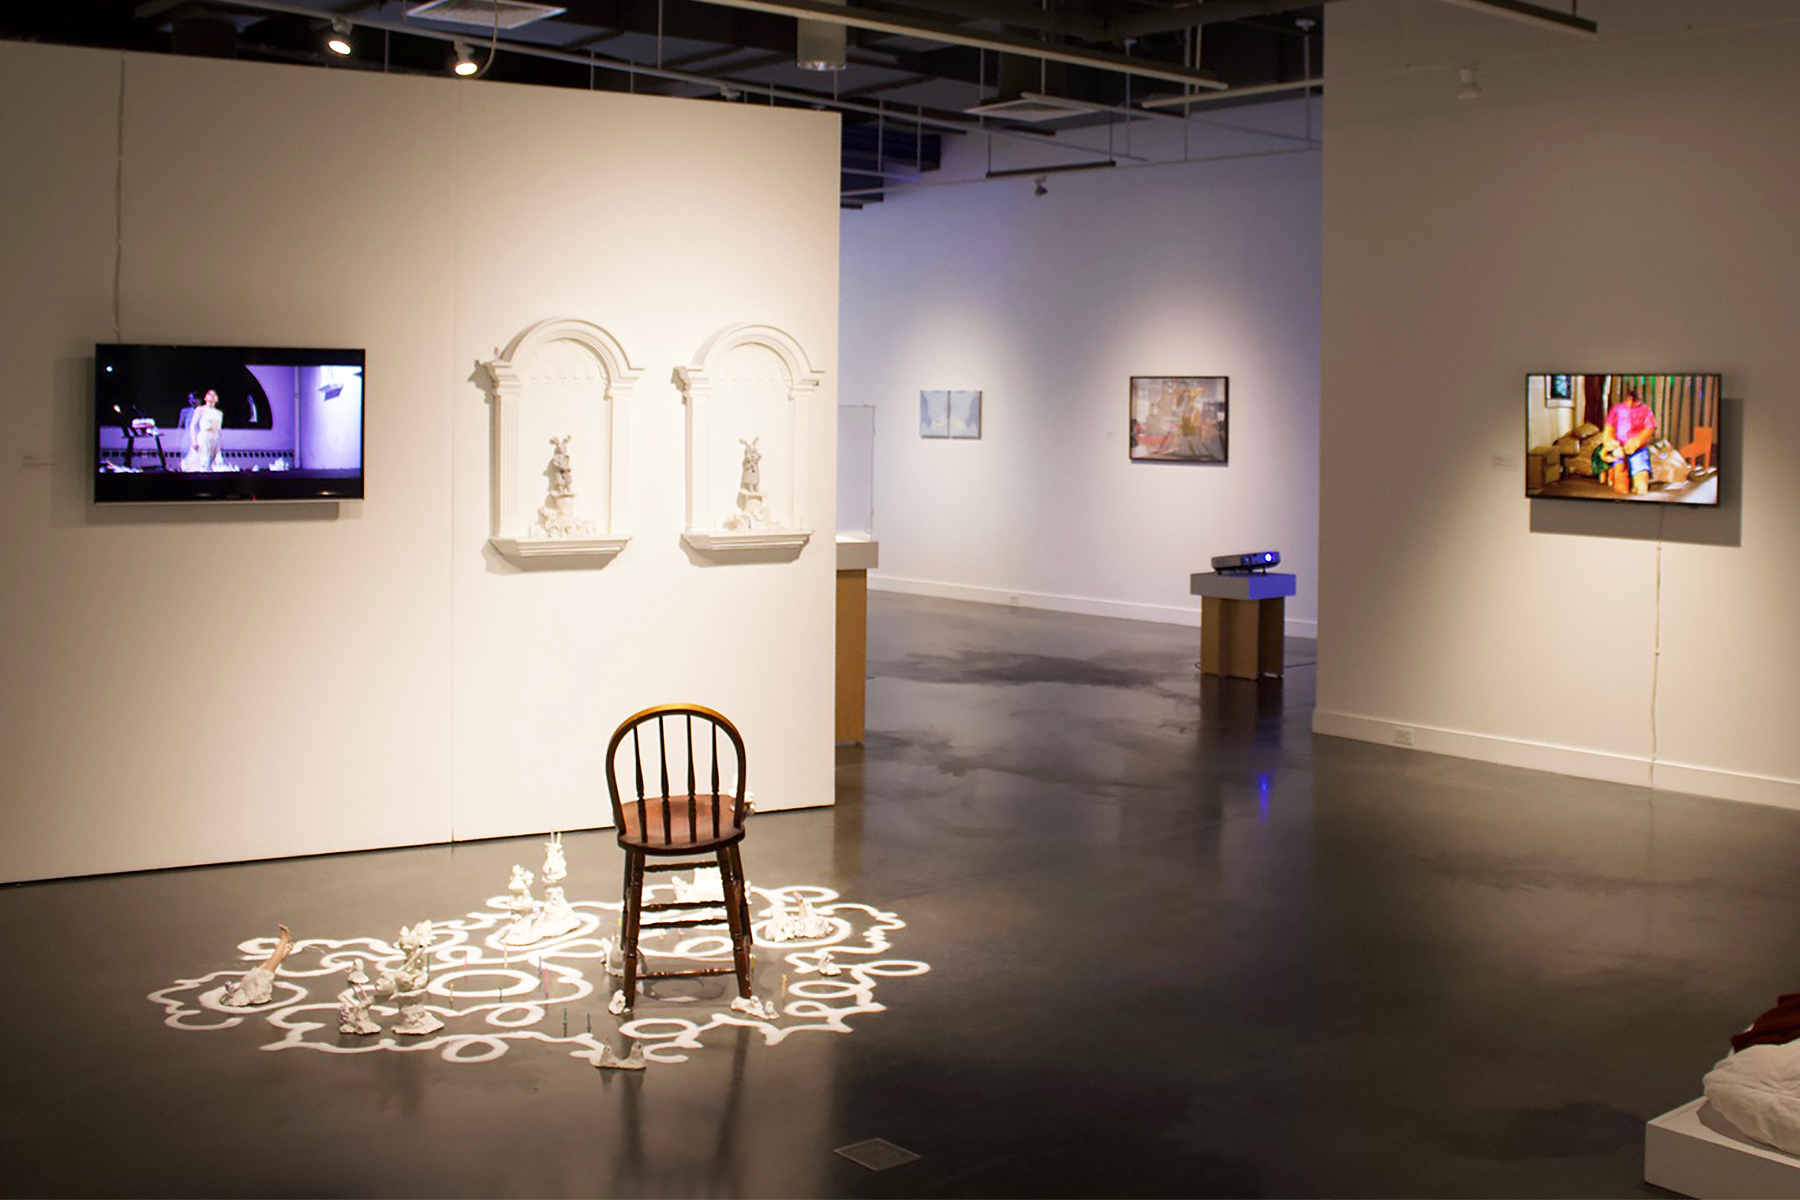 multidisciplinary student show at RISD's Gelman Gallery